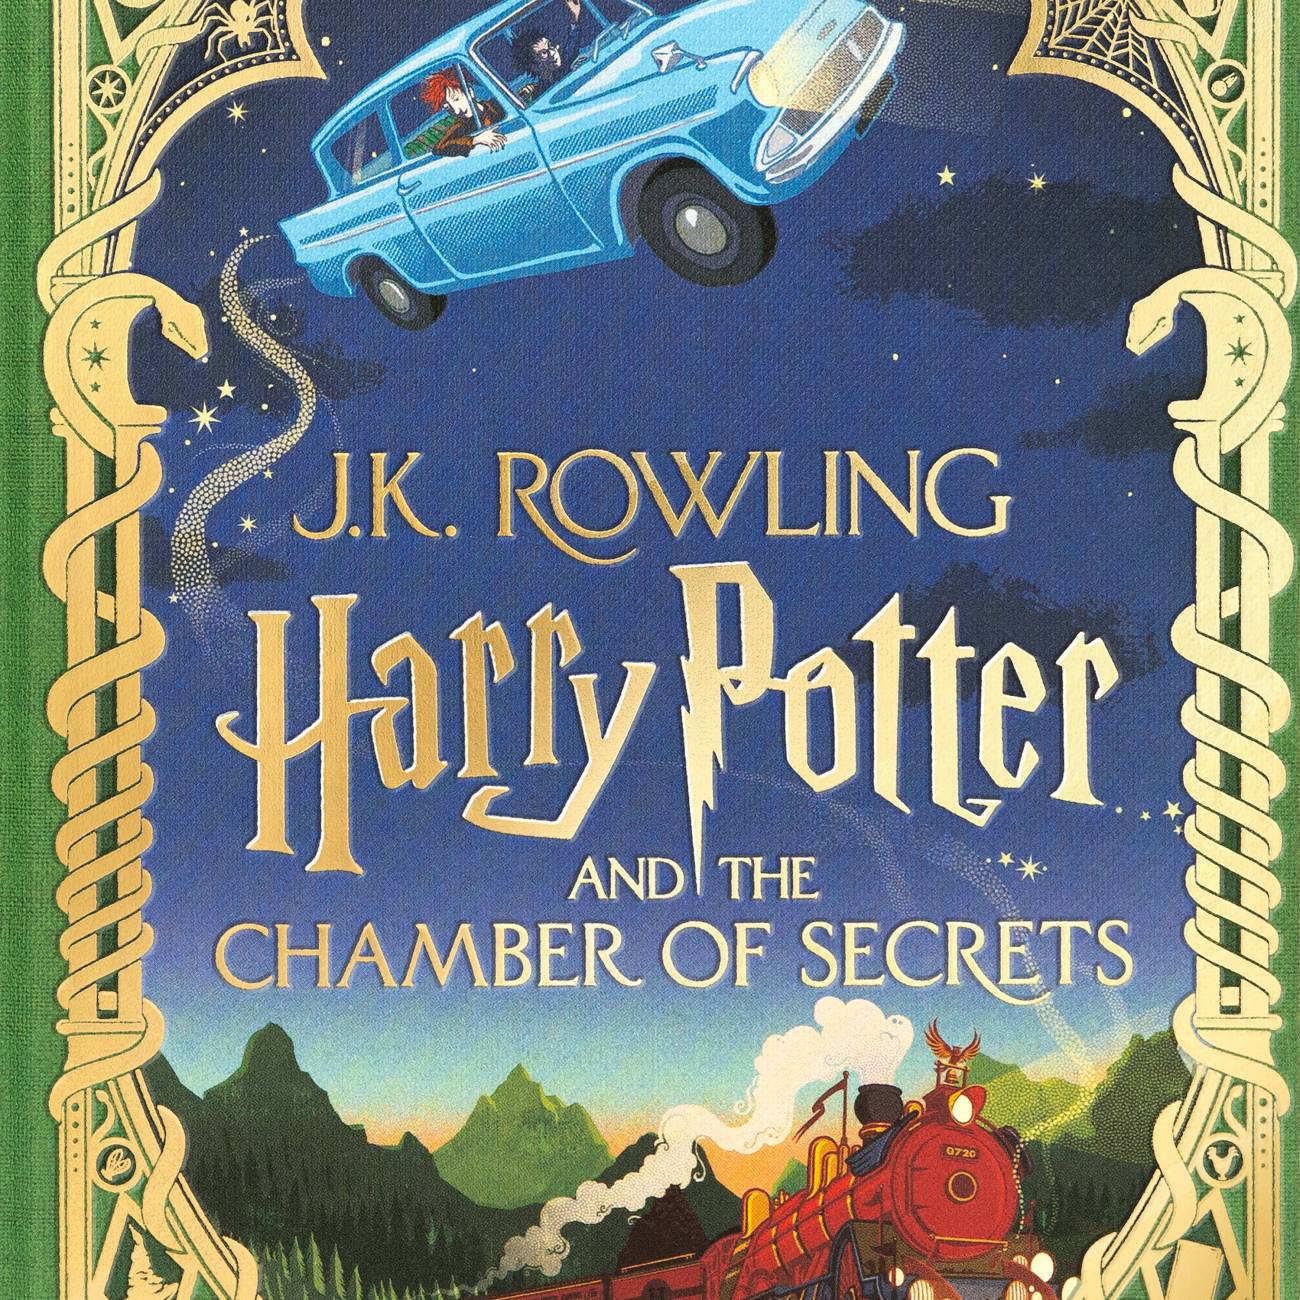 Libro Pack Exclusivo Harry Potter - Edición Minalima De J. K.